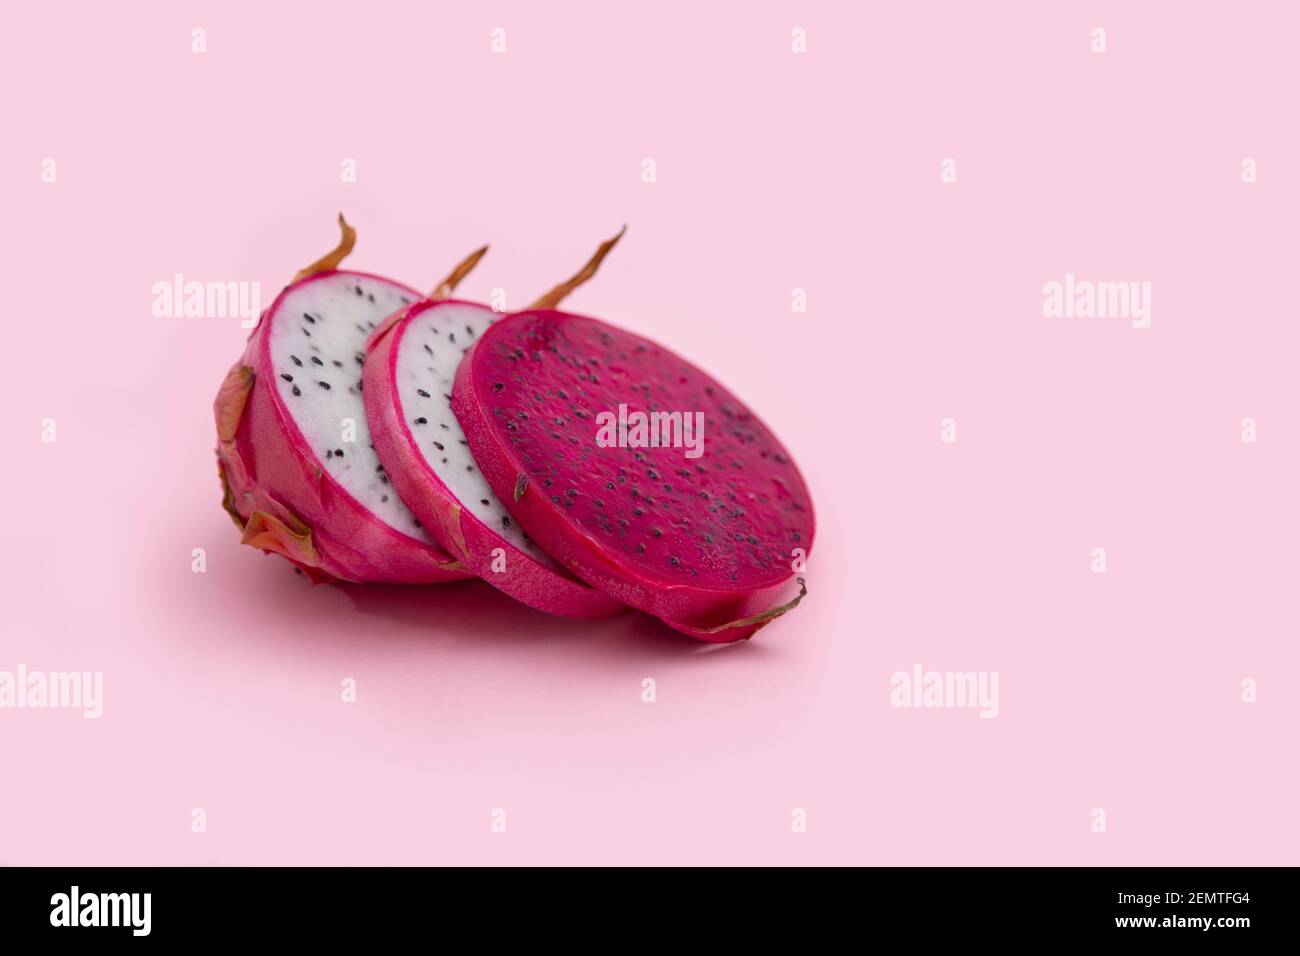 Drago rosa immagini e fotografie stock ad alta risoluzione - Alamy